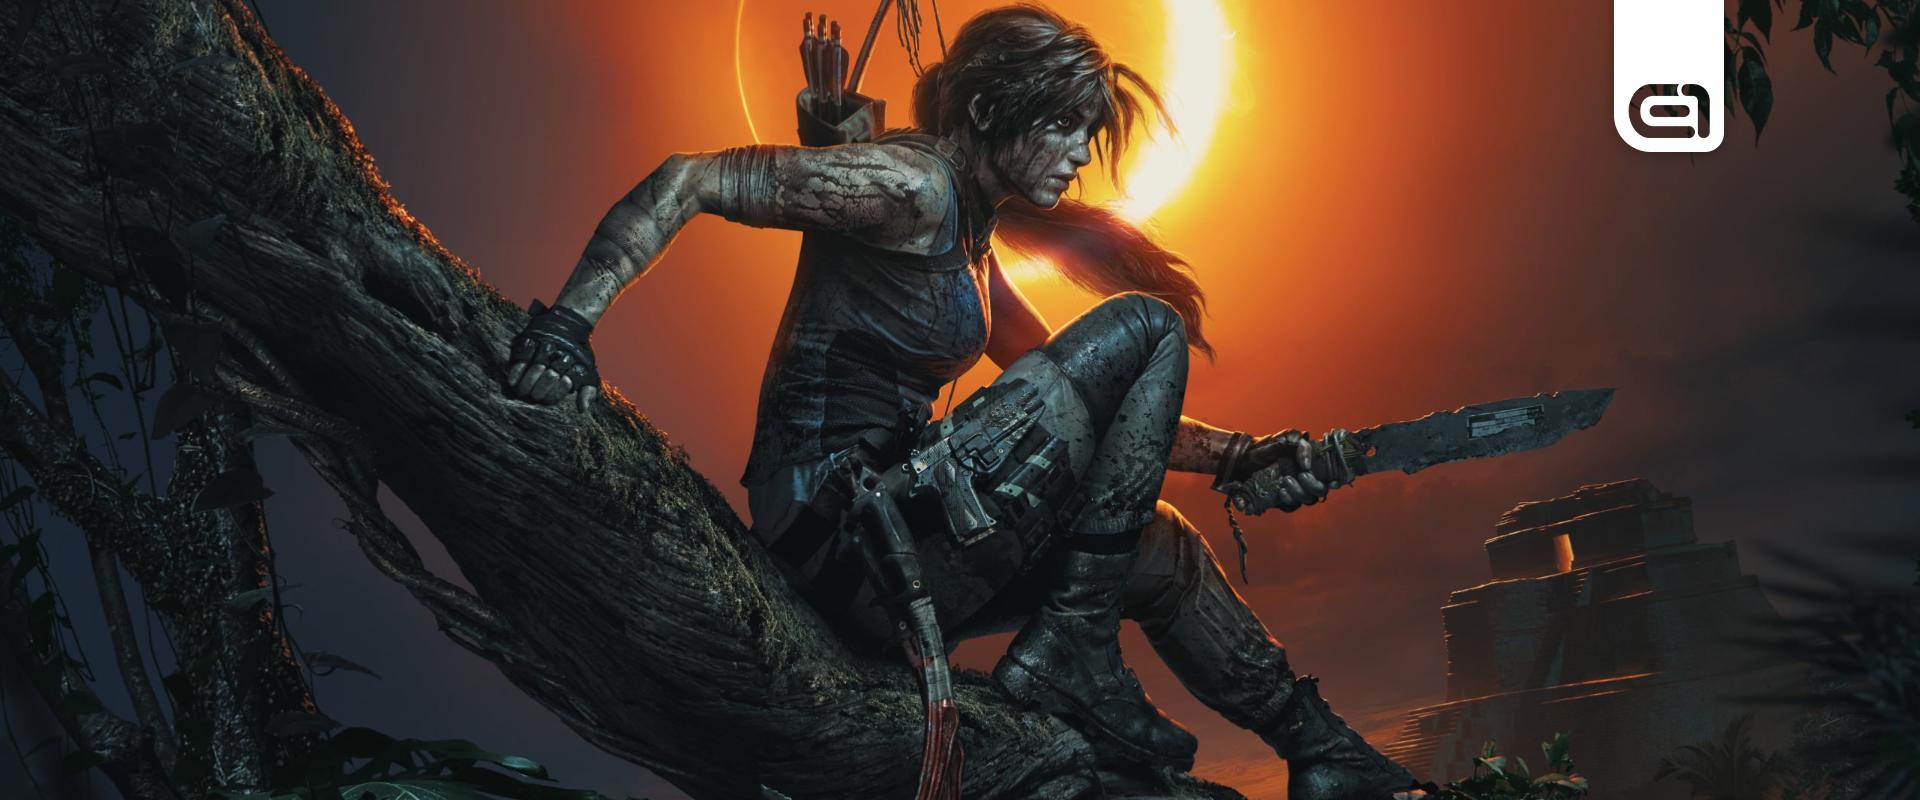 Évekig jönnek még az új Tomb Raider-kalandok! - Filmek, játékok és TV-sorozat is